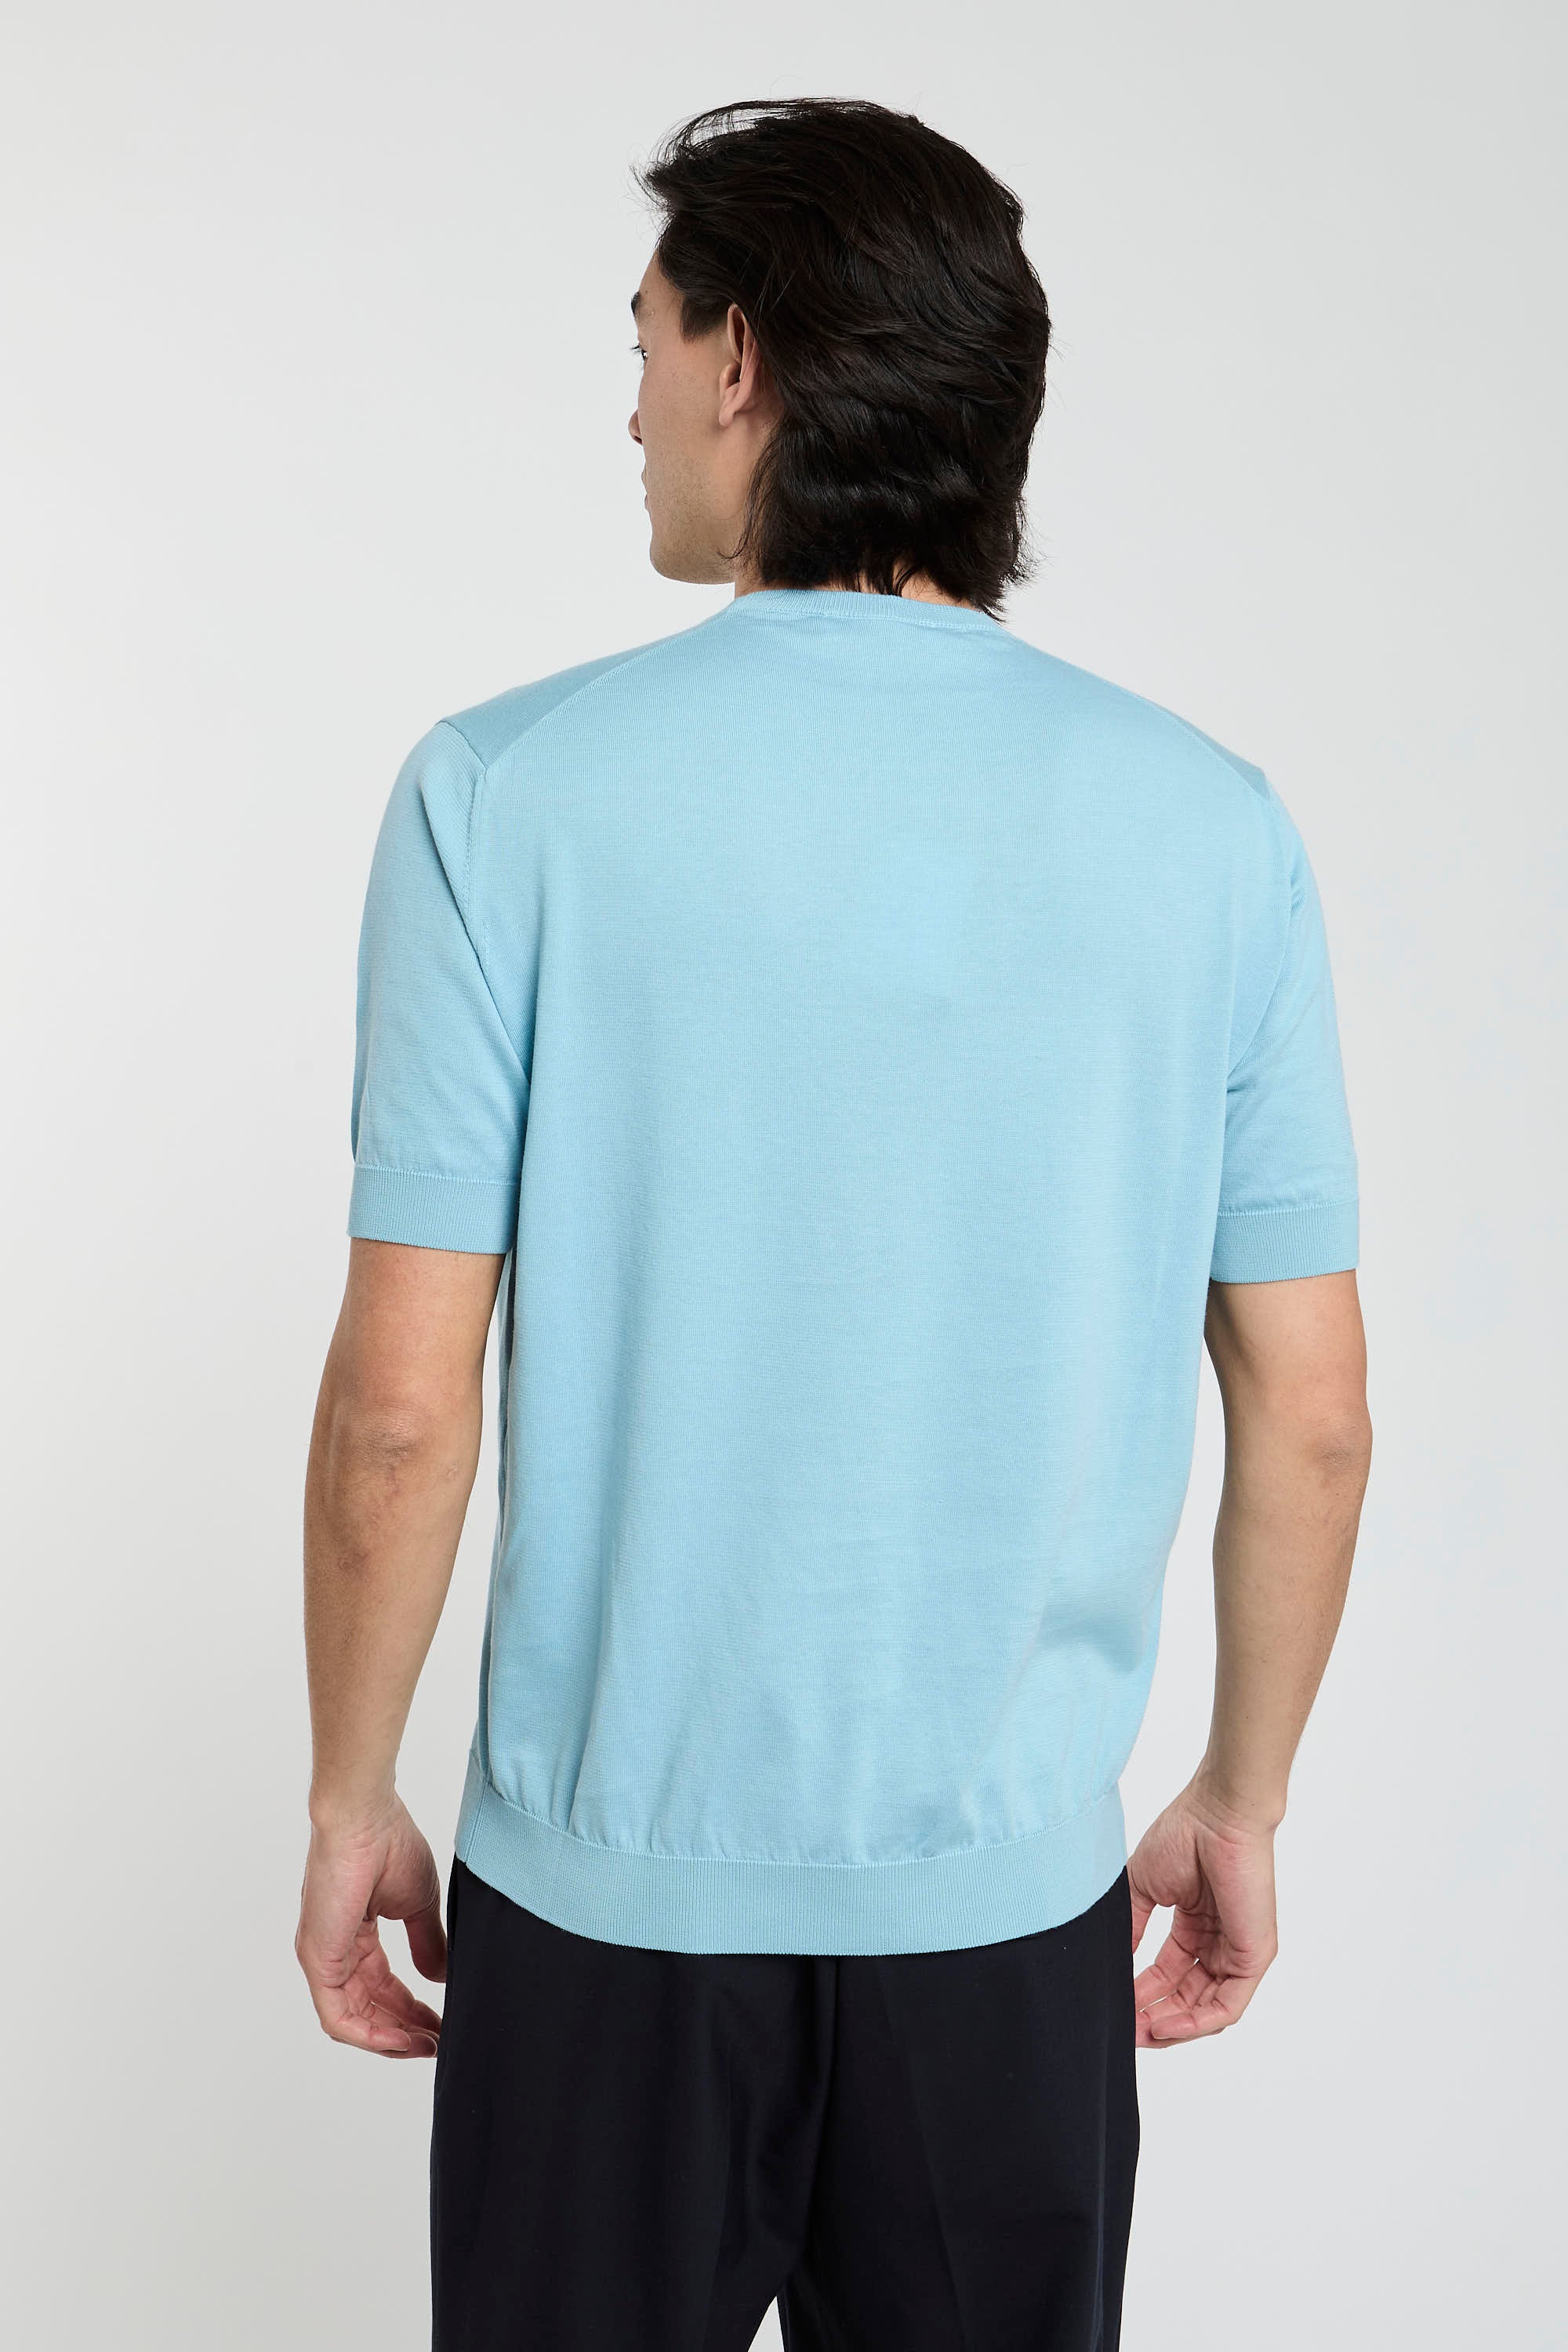 Filippo De Laurentiis T-Shirt 7091 Cotton Turquoise-5